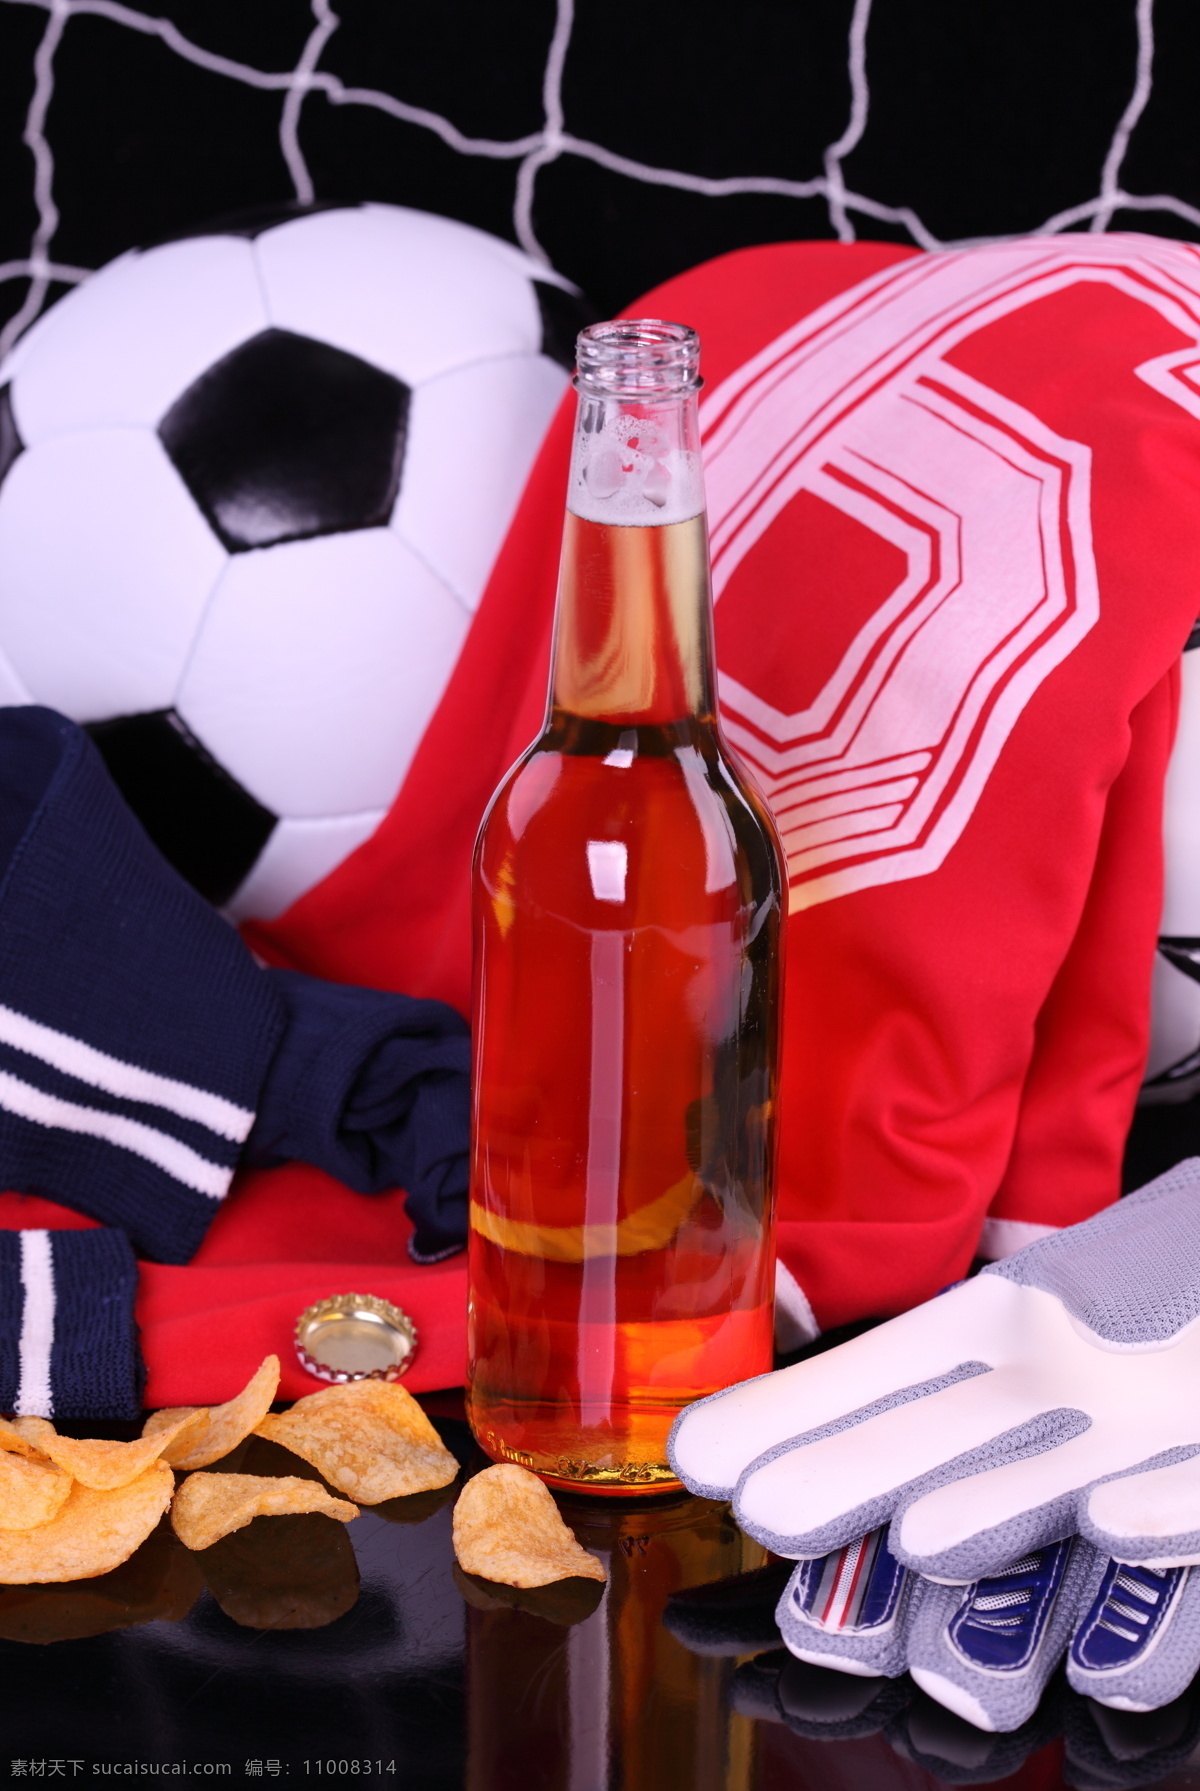 啤酒 设计图库 生活 生活百科 手套 体育 体育用品 足球 足球和啤酒 橘子皮 球网 运动